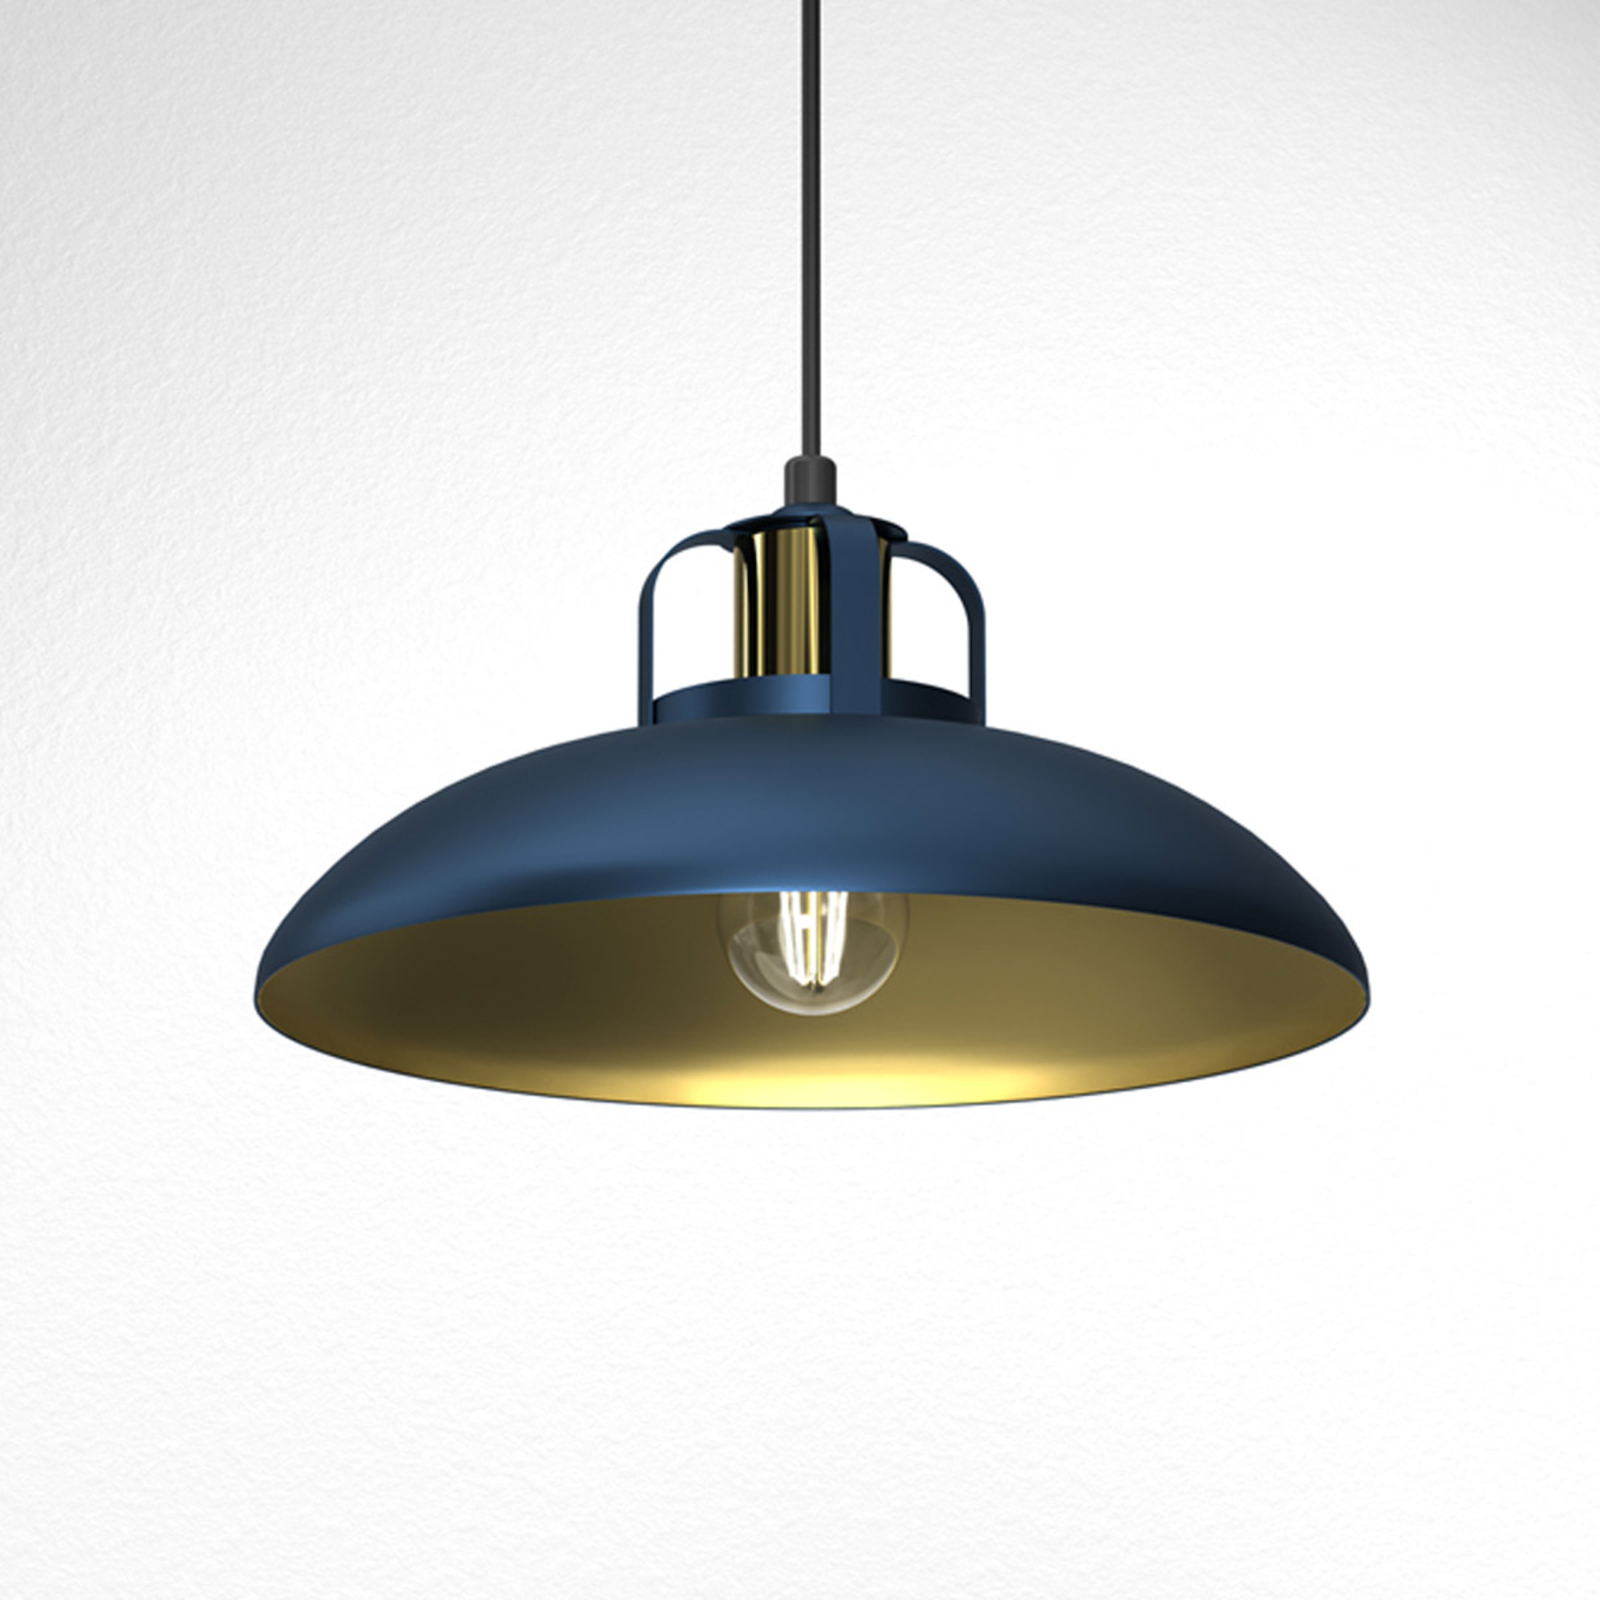 Hanglamp Felix, blauw/goud, 1-lamps